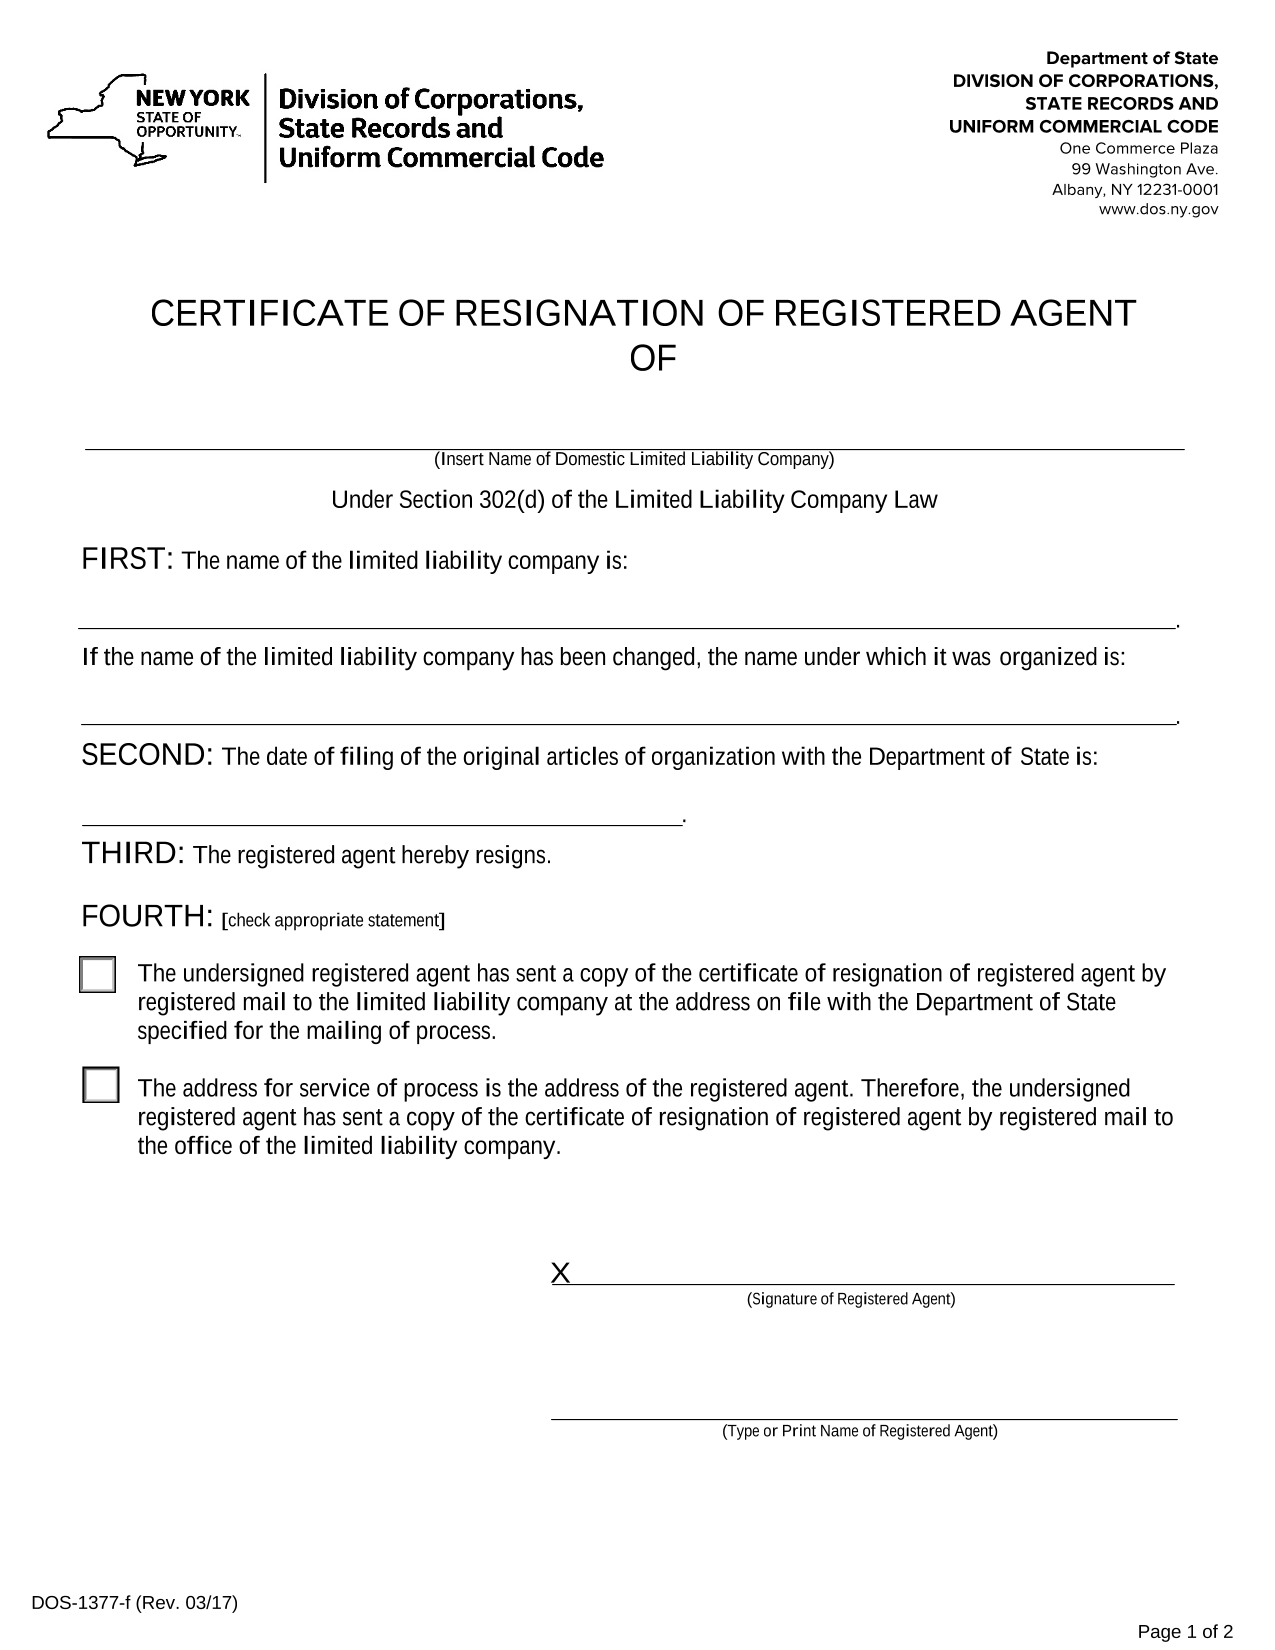 new-york-llc-certificate-of-resignation-of-registered-agent-